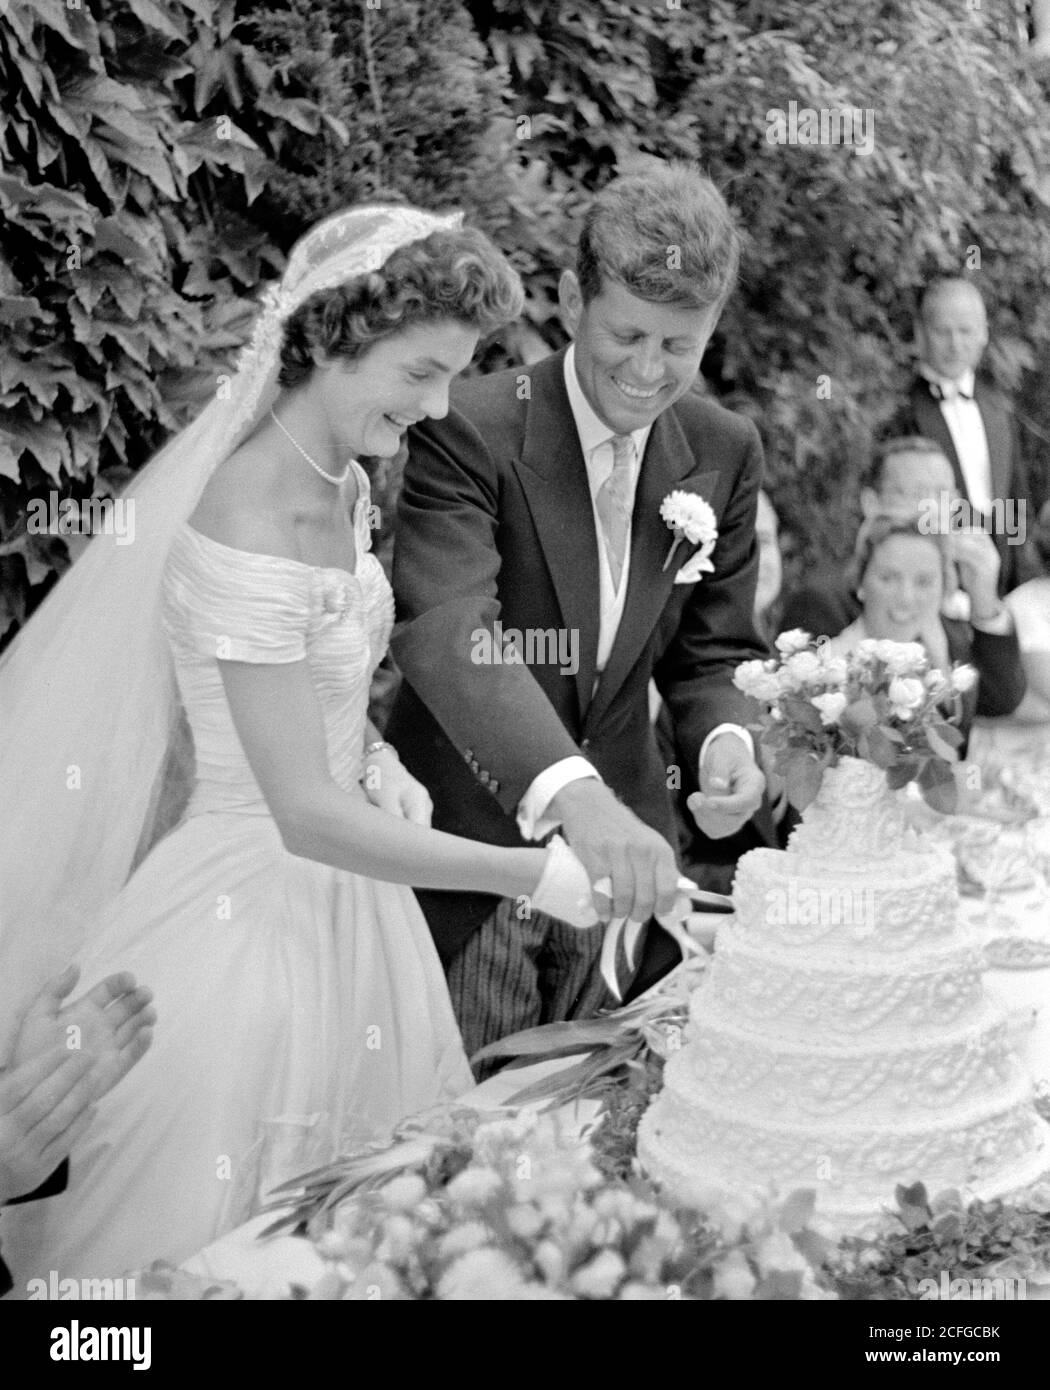 Die Hochzeit von Senator John F. Kennedy mit Jacqueline Bouvier in Newport, RI am 12. September 1953. Das Paar schneidet den Kuchen an ihrem Hochzeitsempfang. Stockfoto